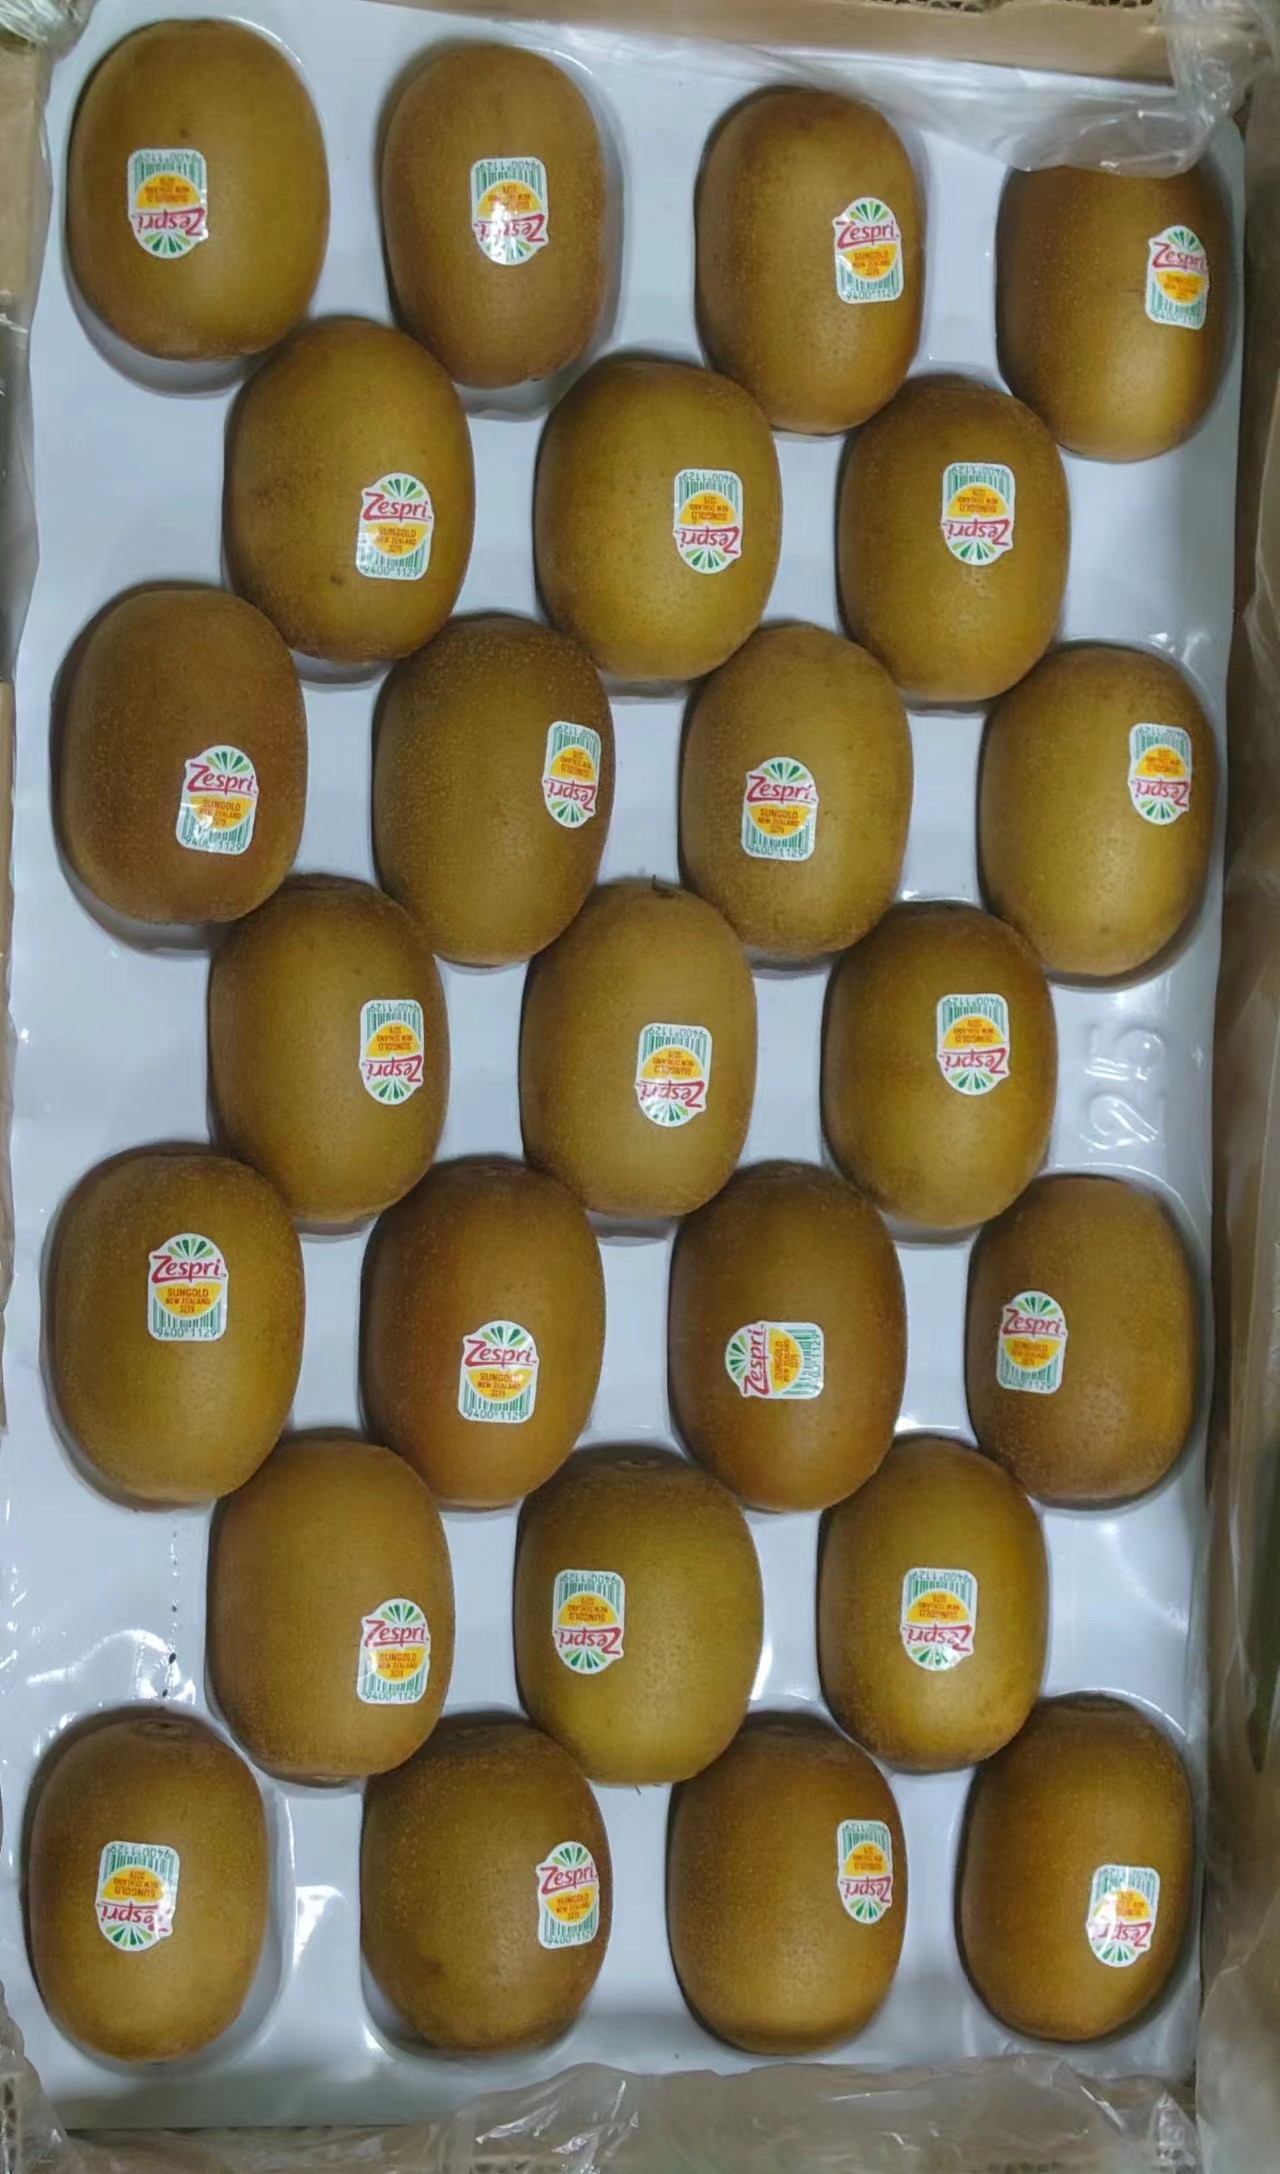 Imported kiwifruit